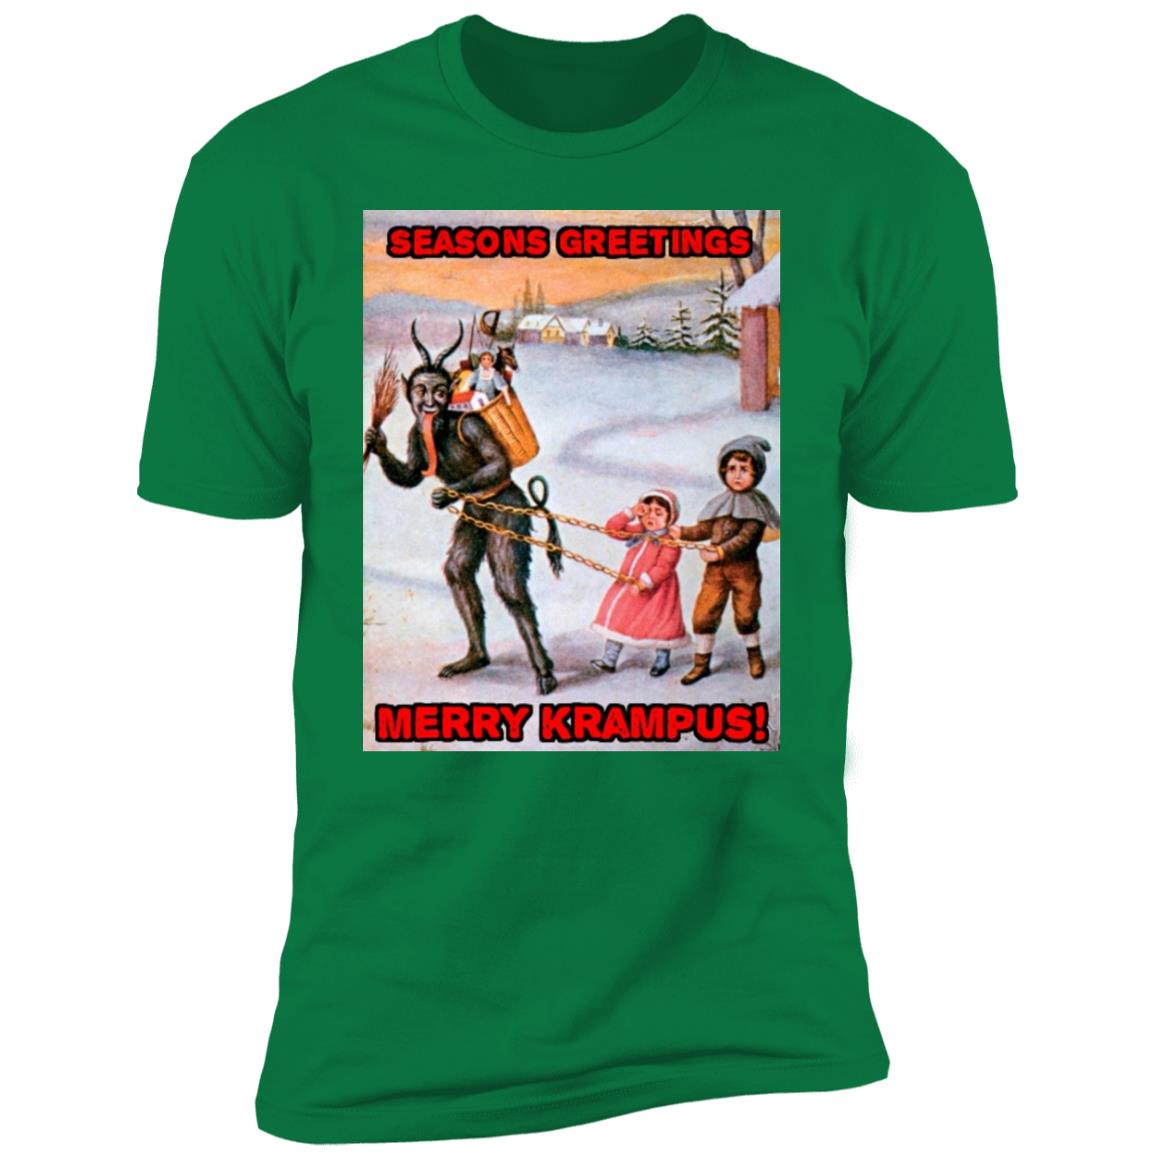 Merry Krampus Christmas Holiday Horror Tshirt